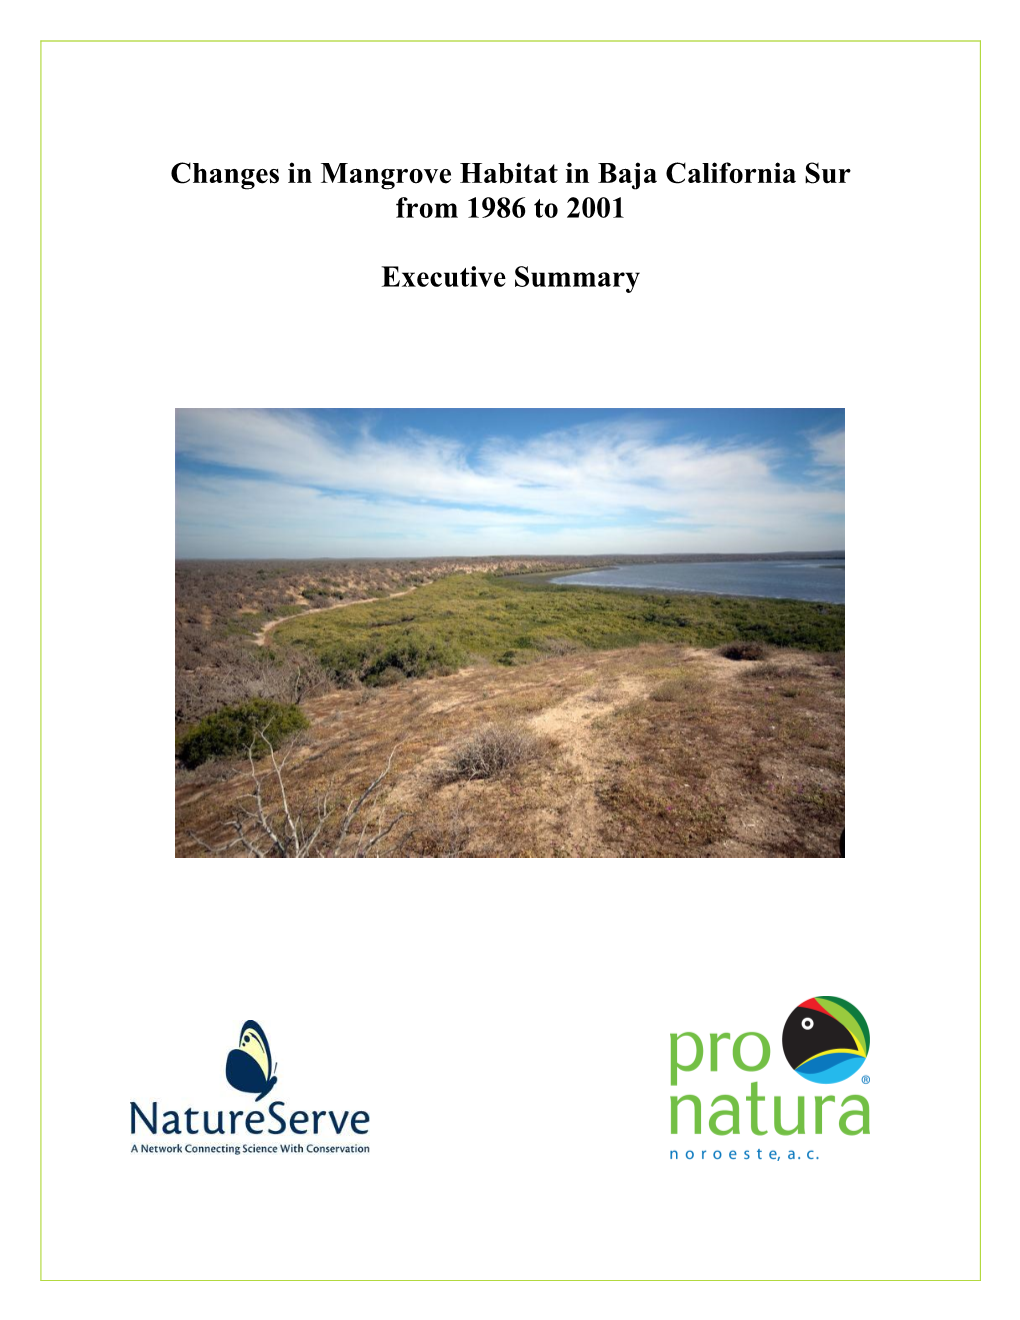 Hak Et Al. 2008. Baja California Sur Mangrove Changes